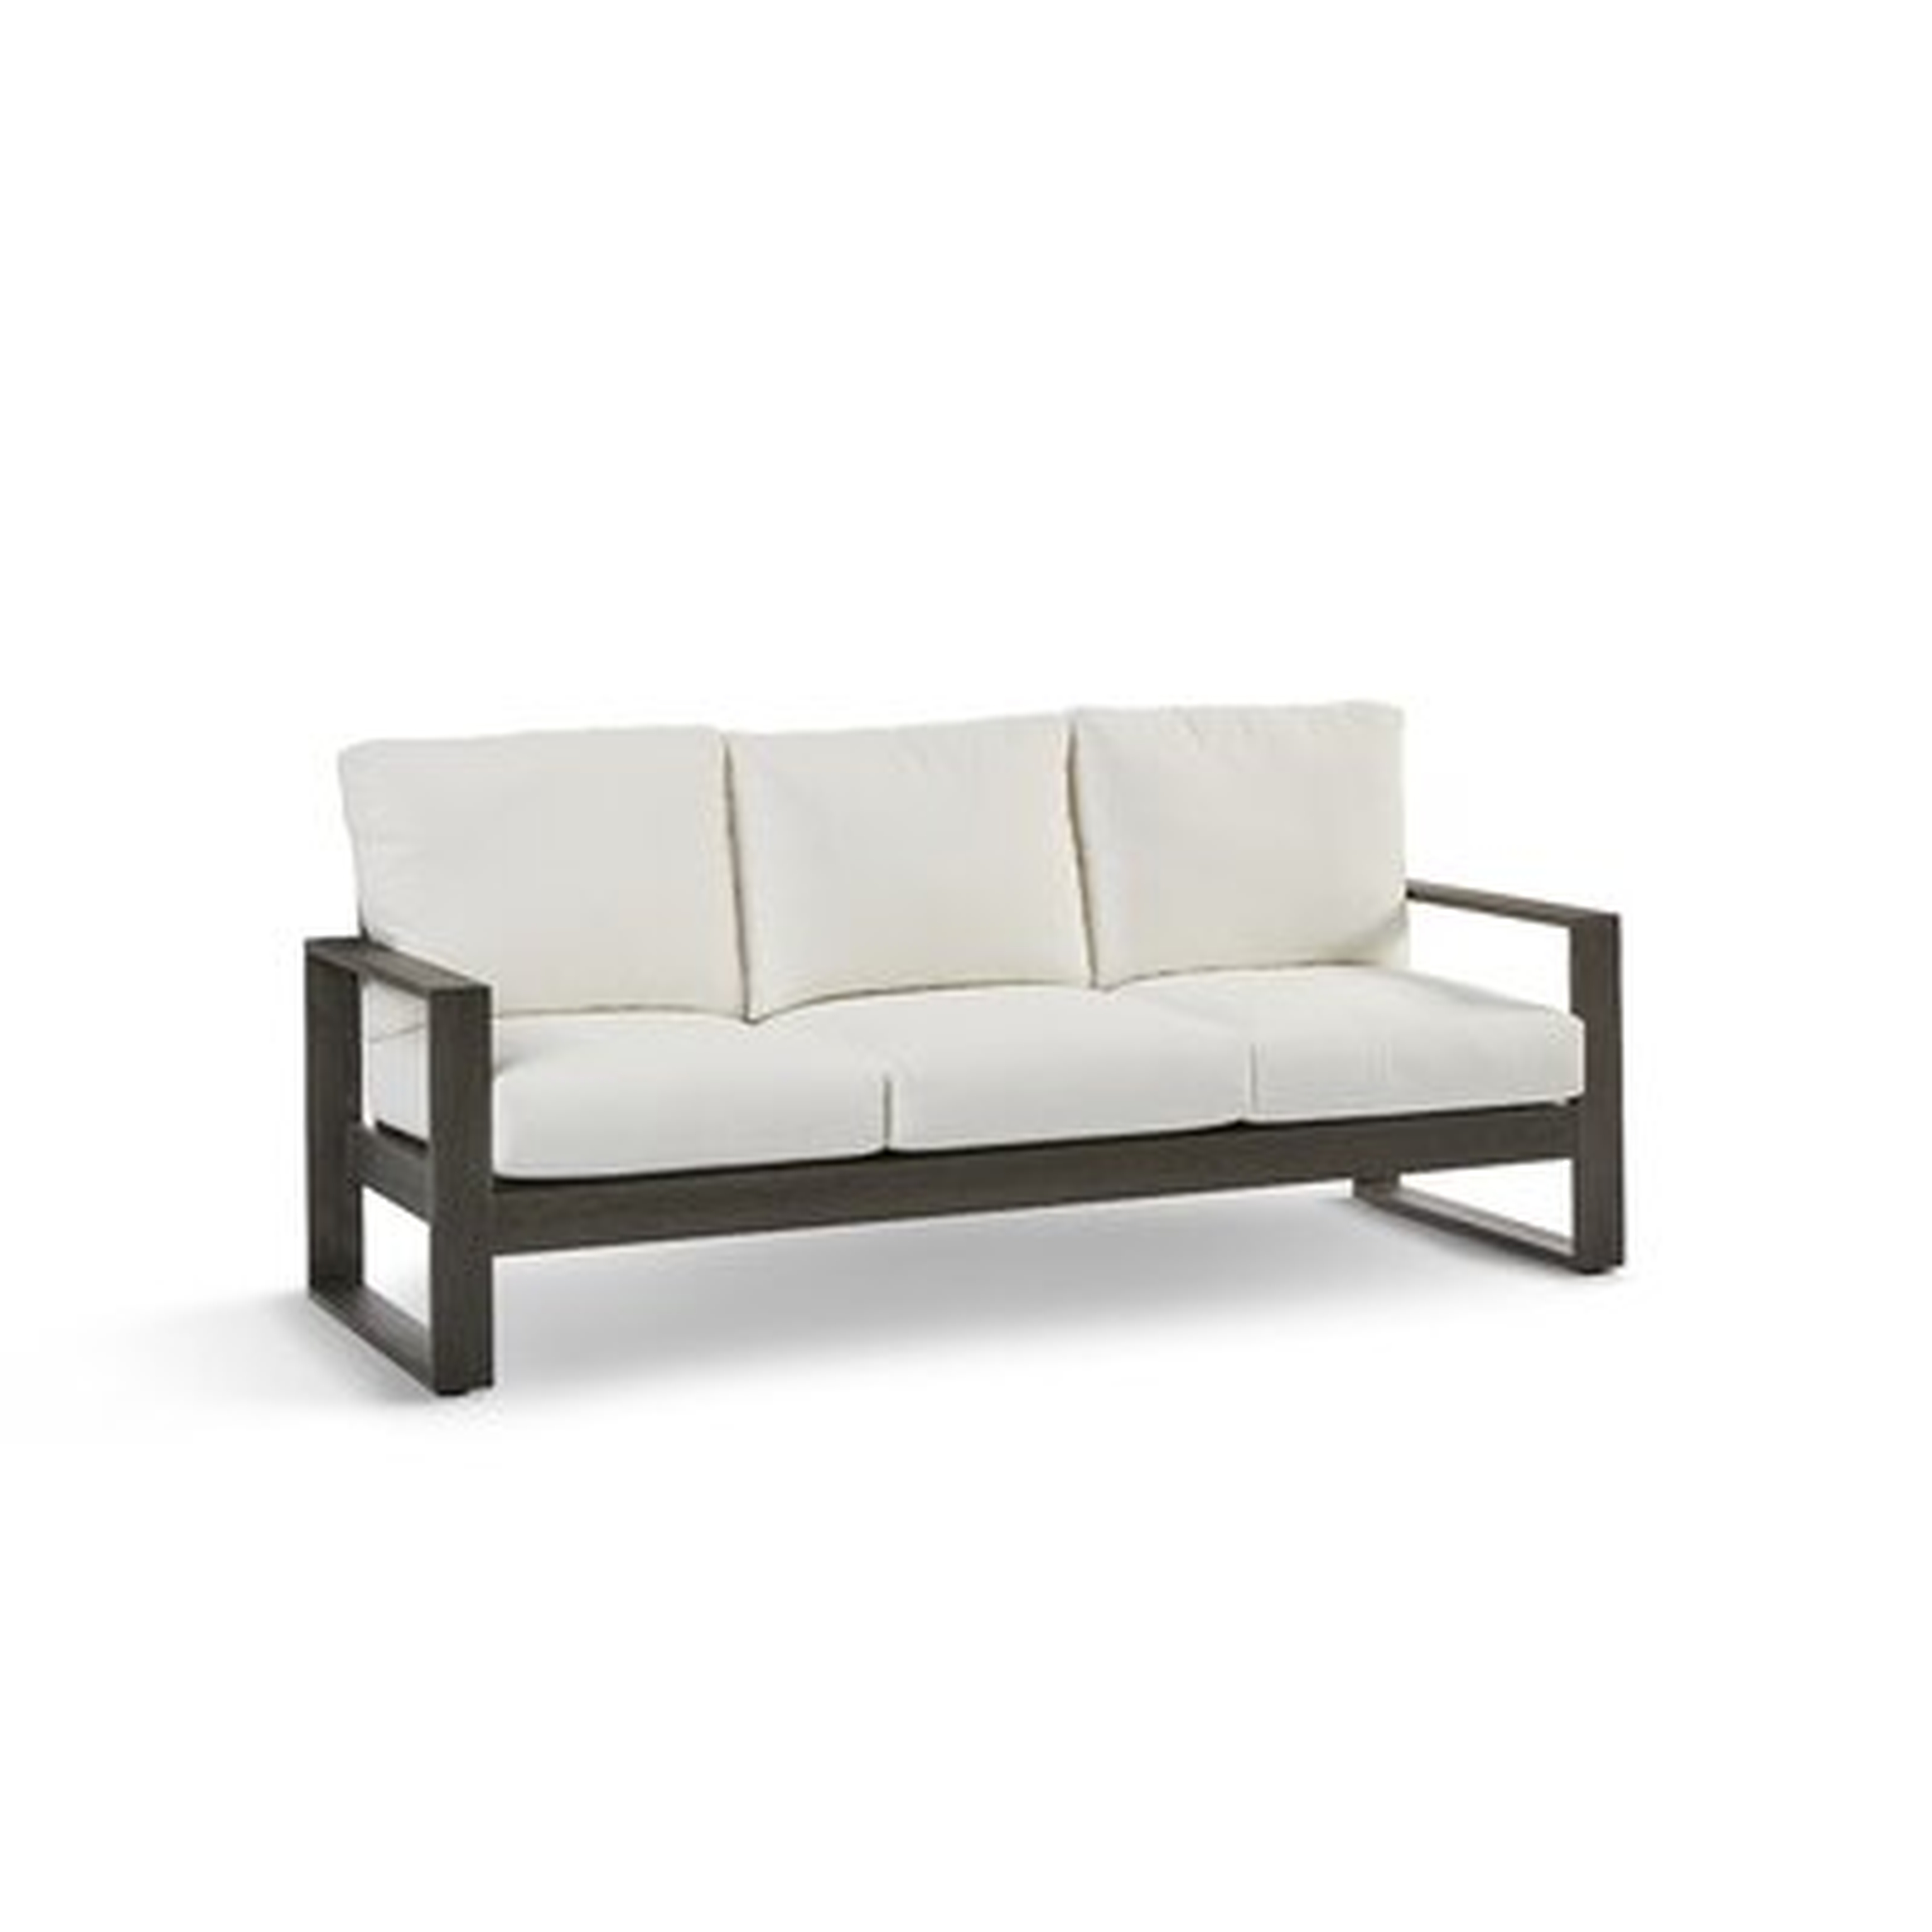 Parks Patio Sofa with Cushions - Wayfair